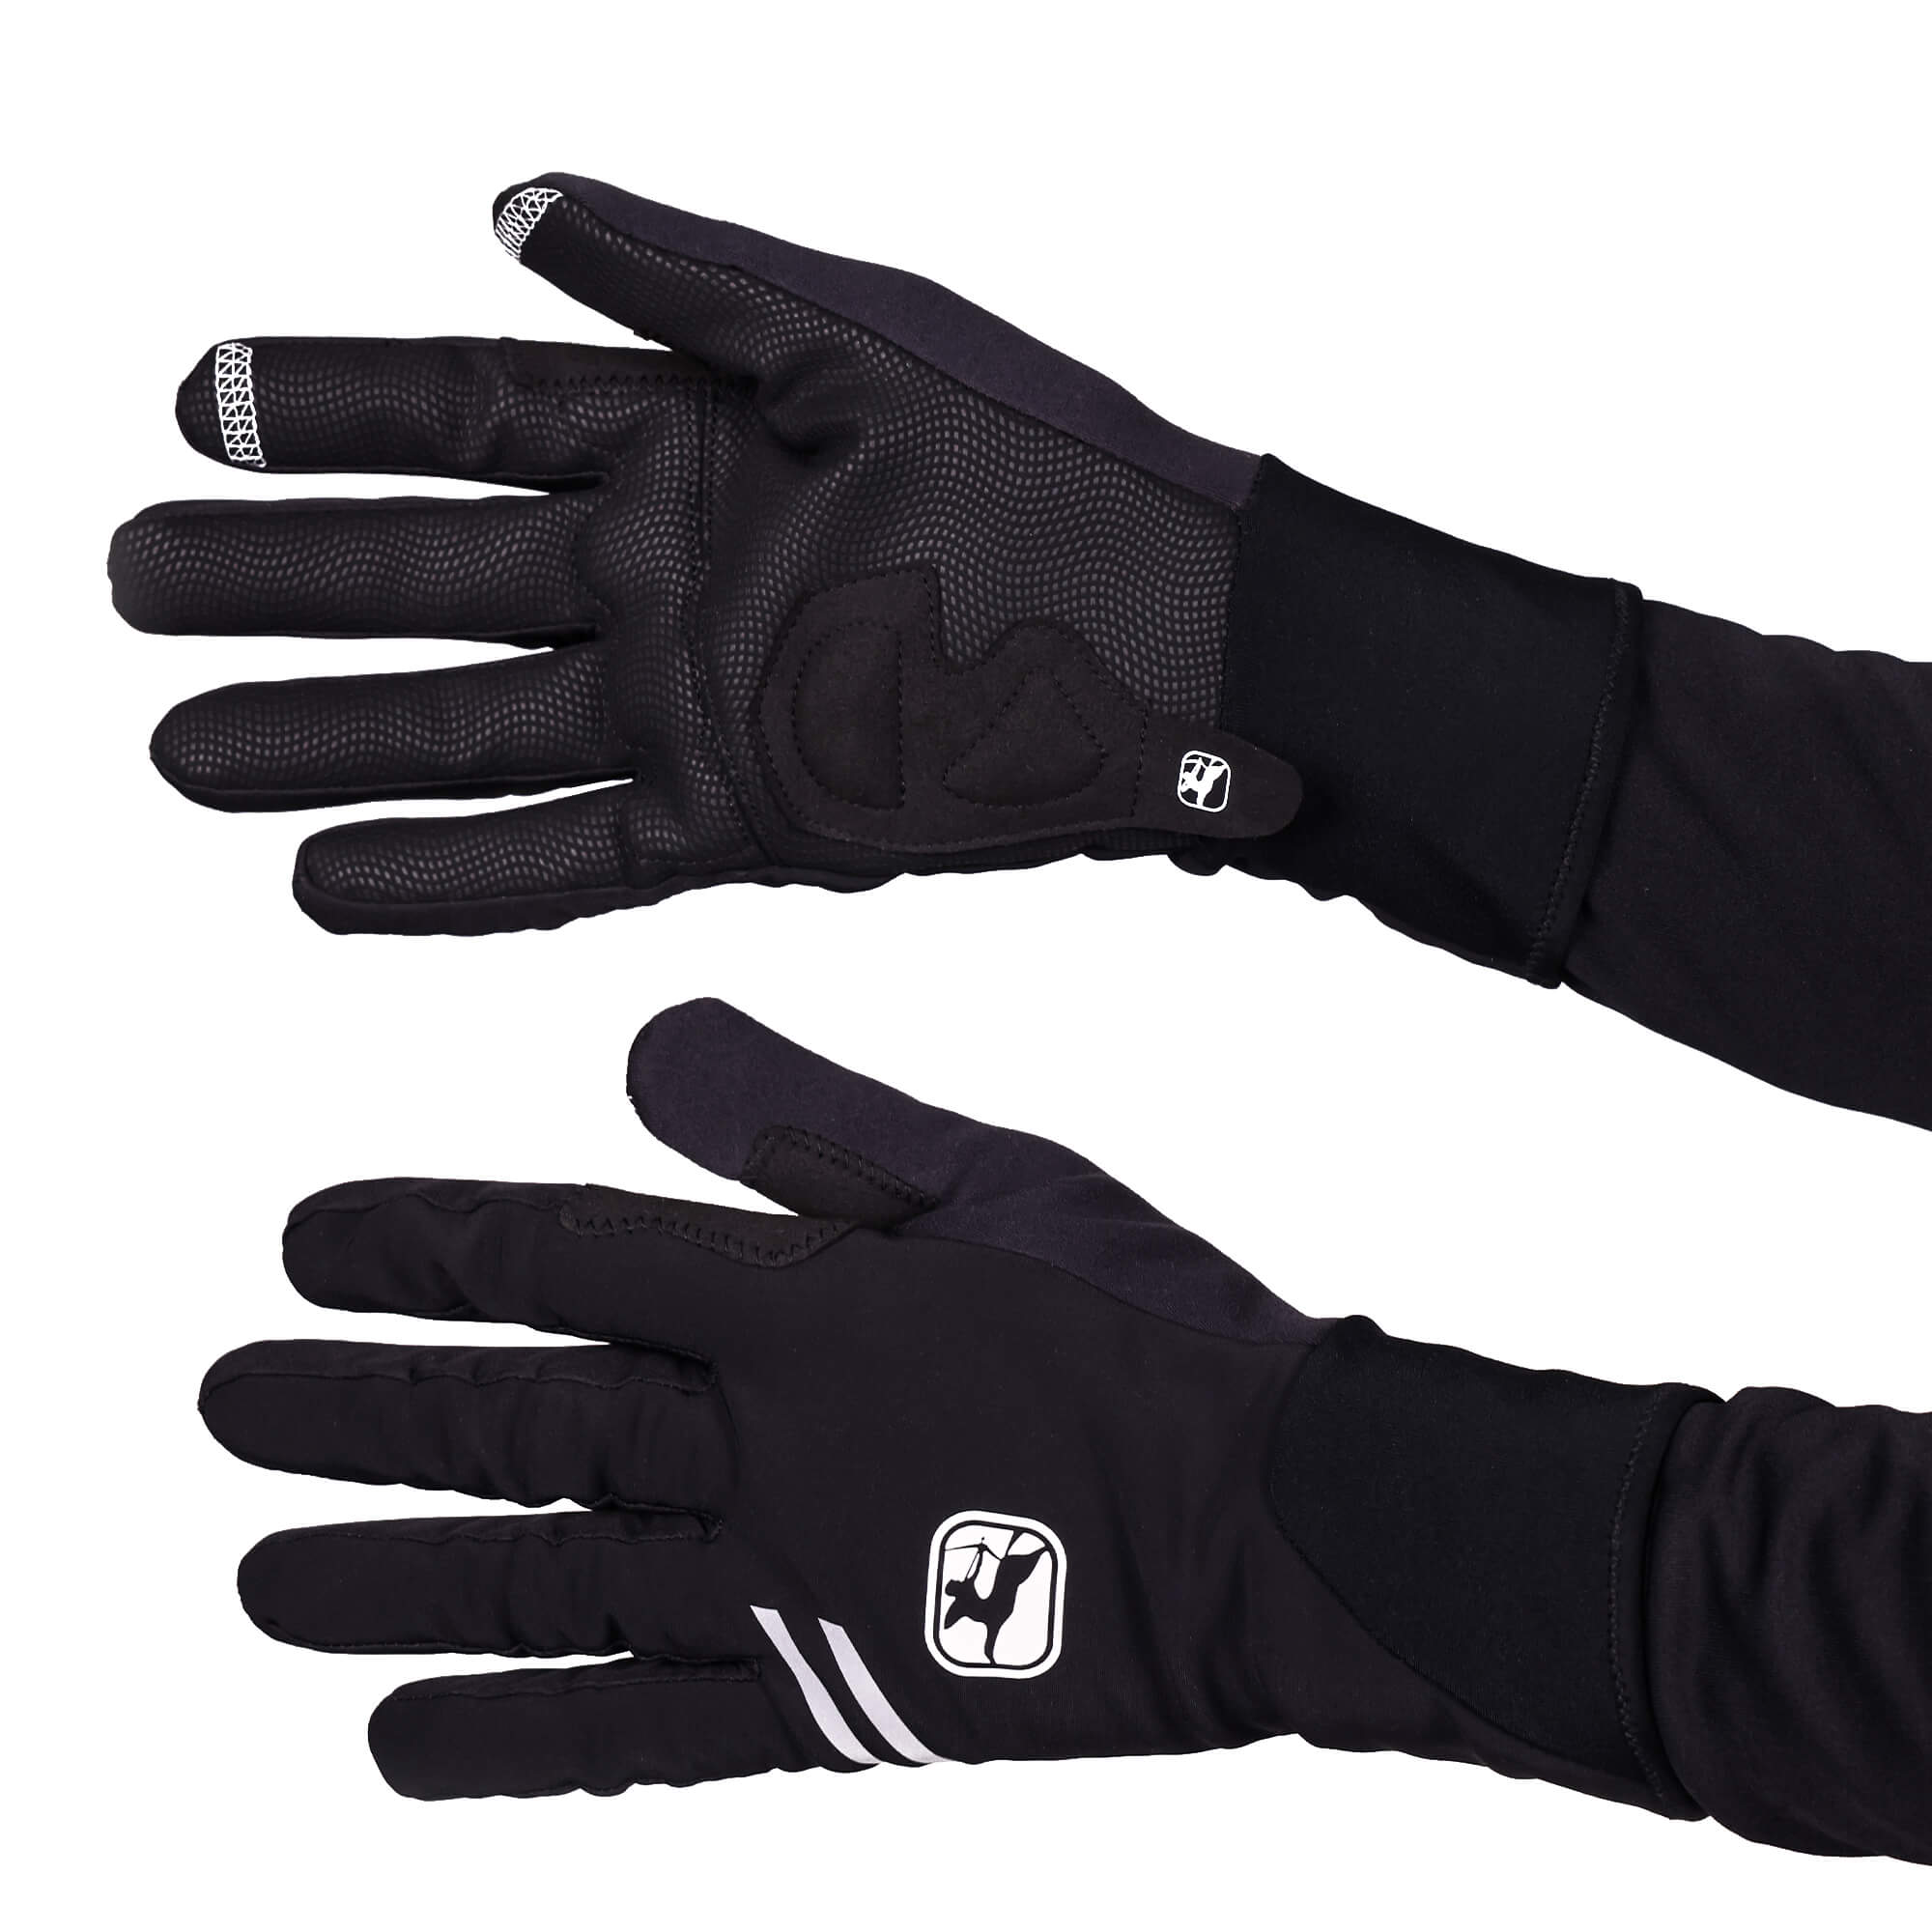 AV 200 Winter Full Finger Gloves